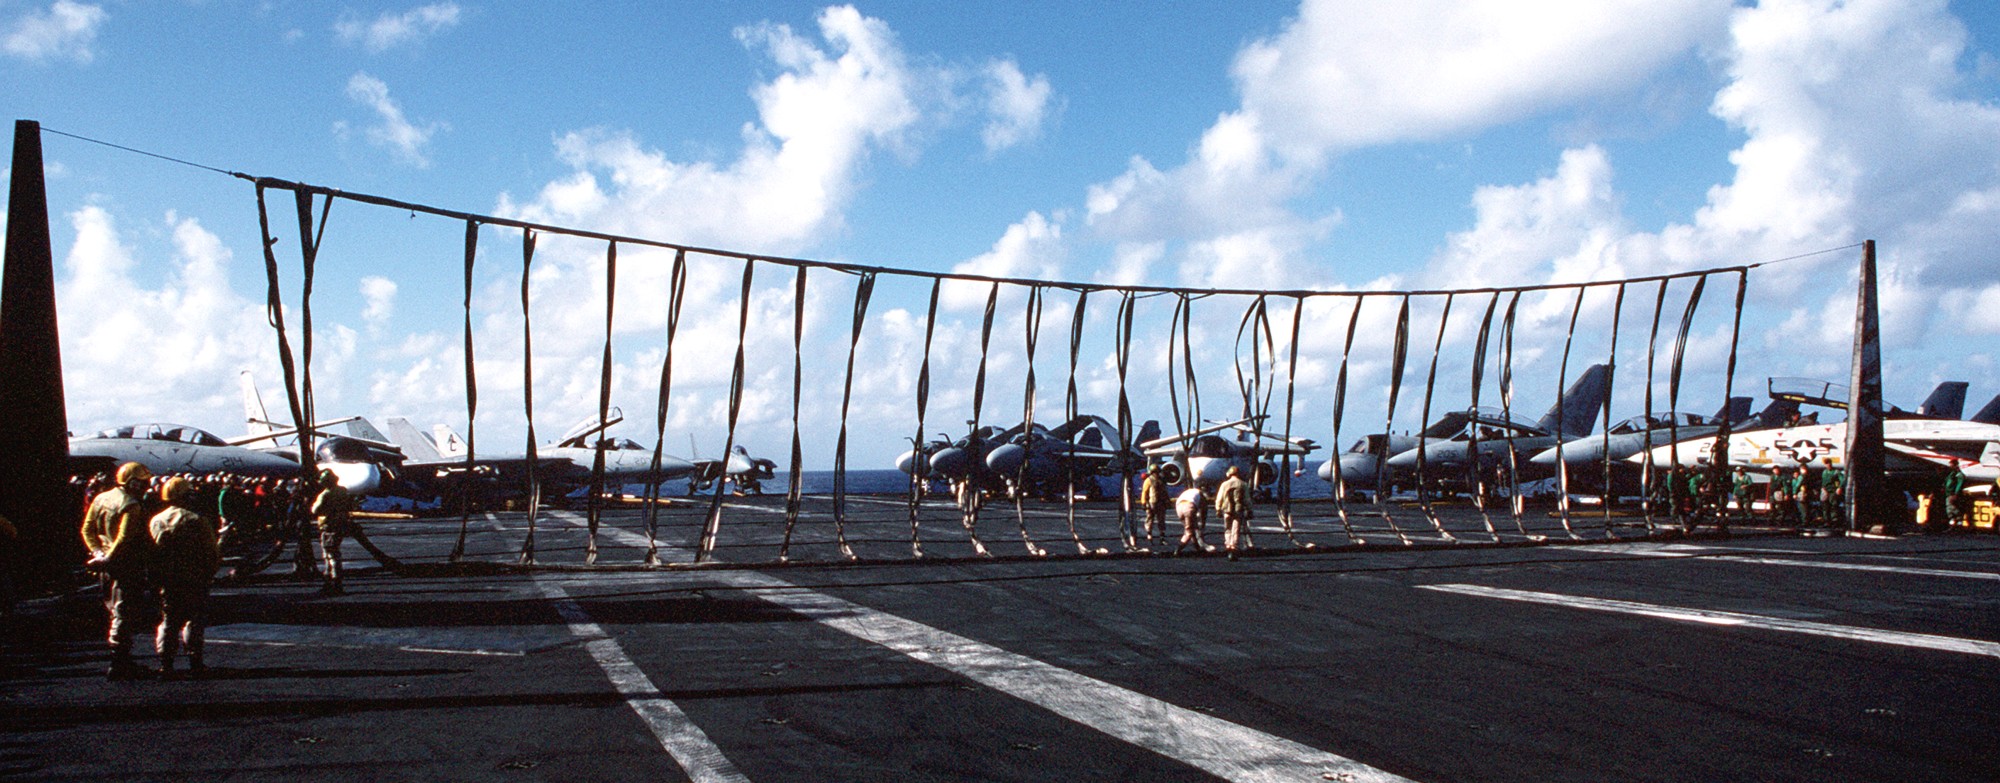 cv-67 uss john f. kennedy aircraft carrier us navy barricade drill 49